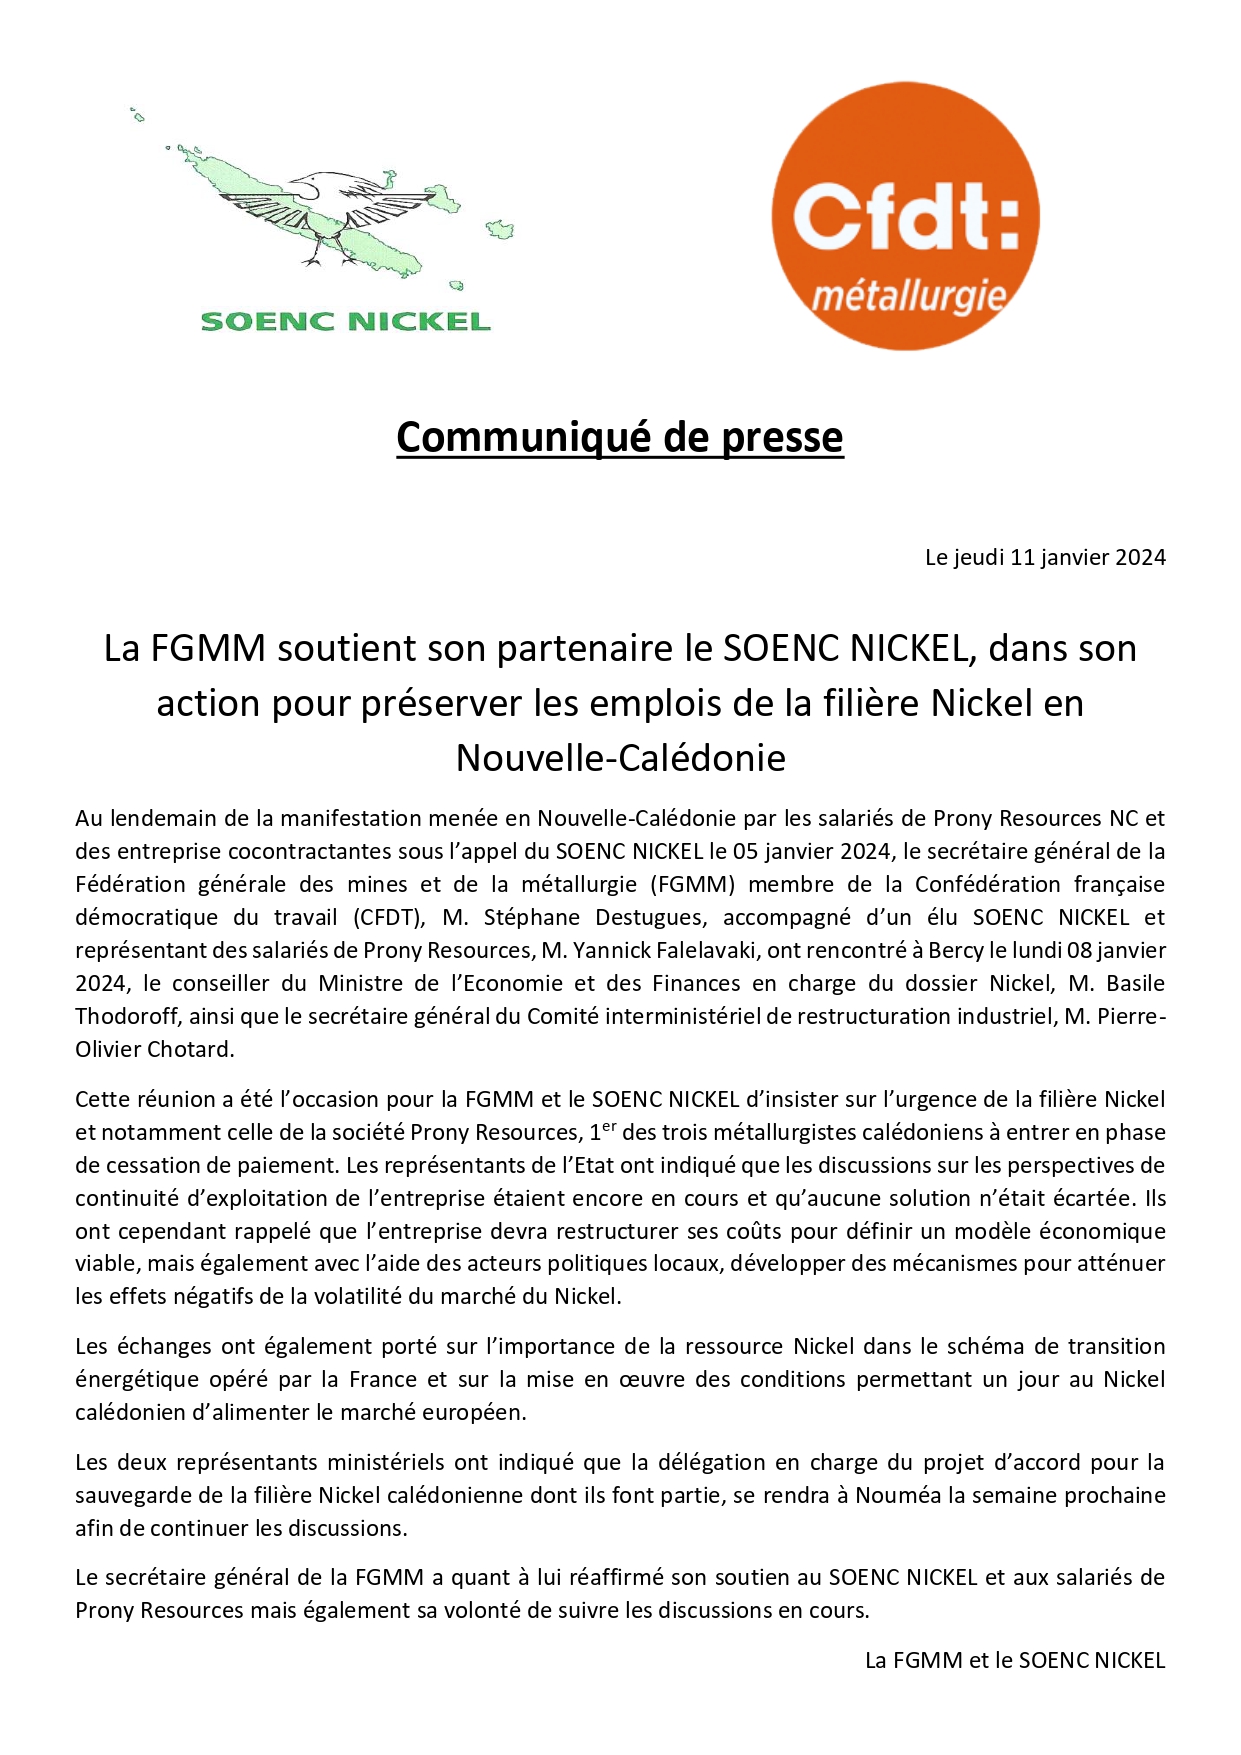 La FGMM soutient le SOENC Nickel, dans son action pour préserver les emplois de la filière Nickel